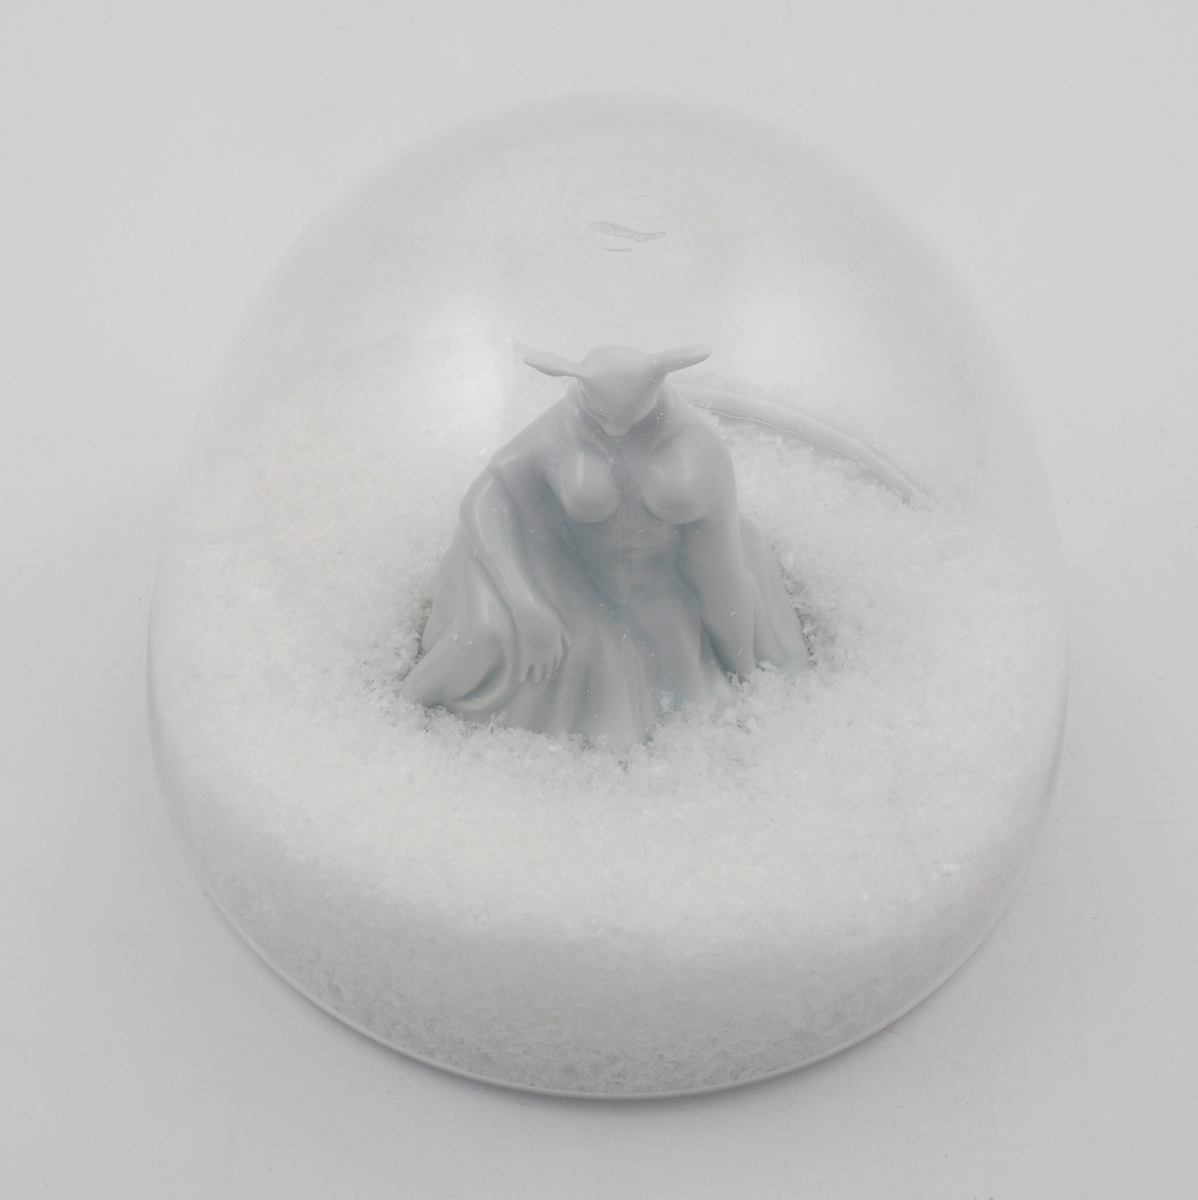 Hvit porselensfigur med rådyrhode og menneskekropp, plassert i omsluttende glasskuppel med kunstige snøfnugg.